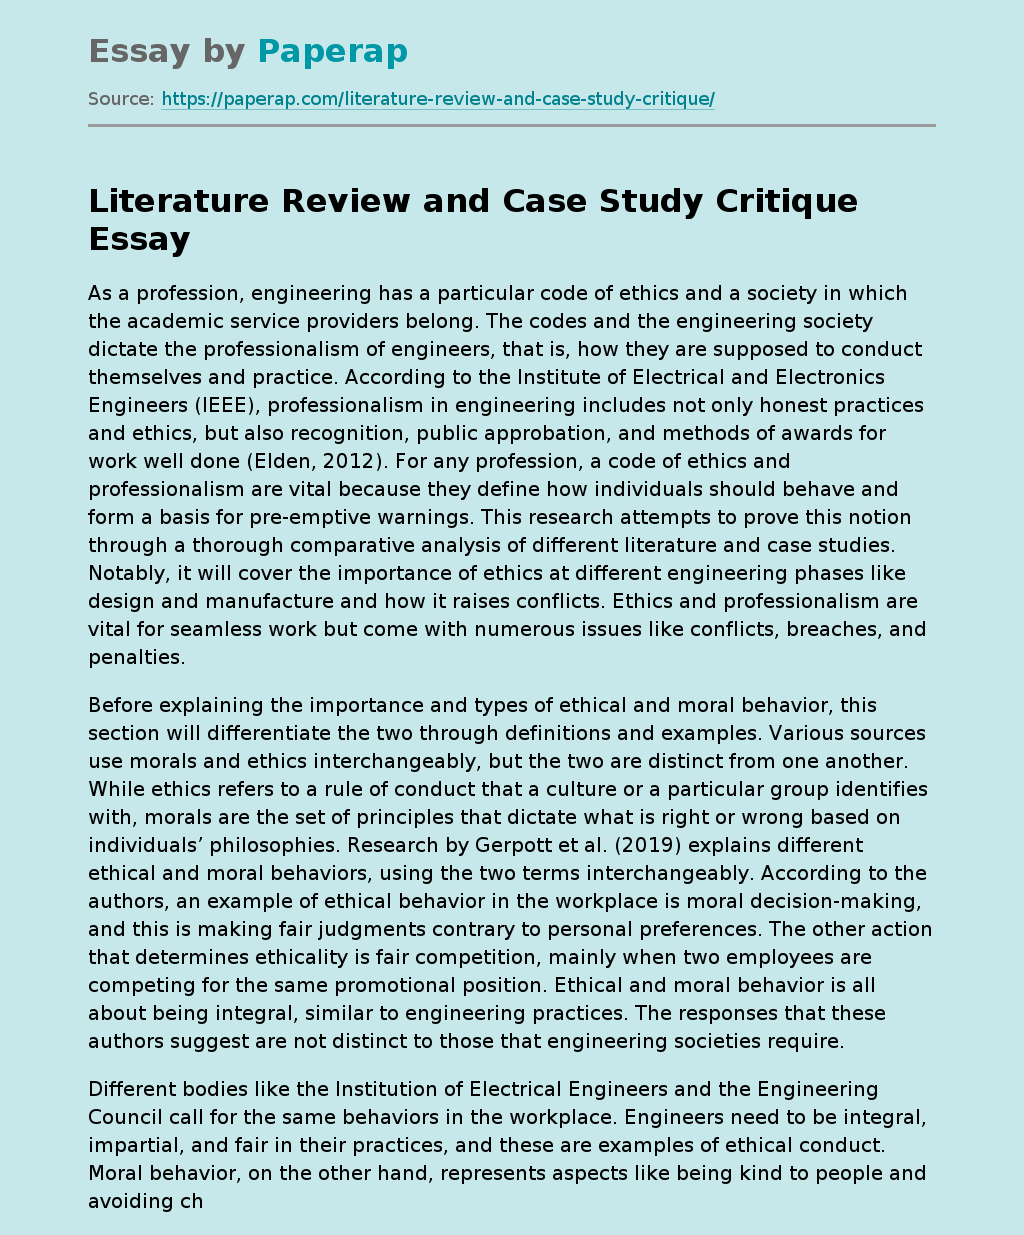 critique the literature review